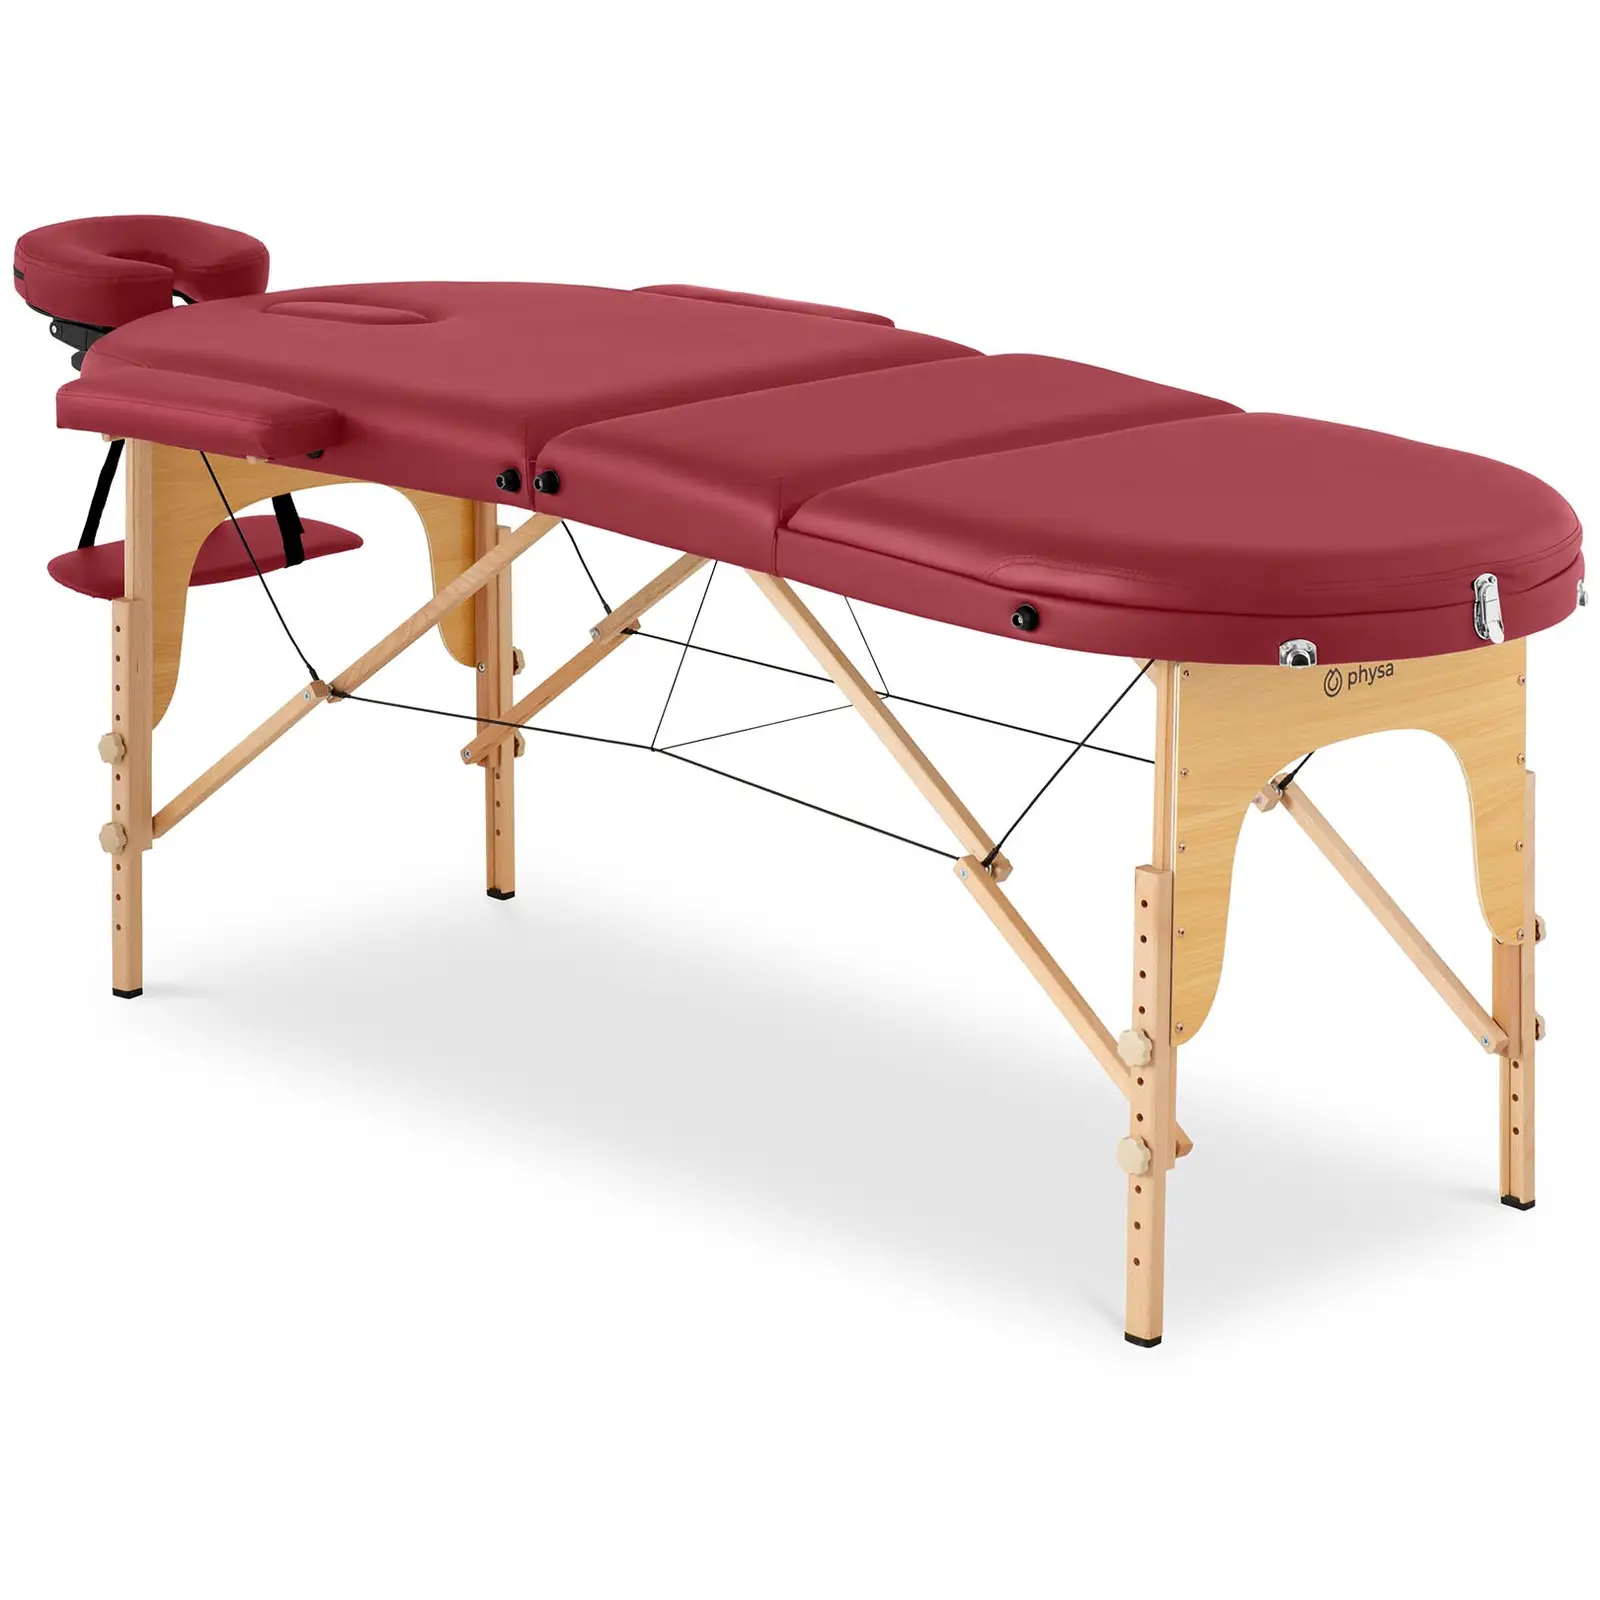 Cama de massagem - 185-211 x 70-88 x 63-85  cm - 227 kg - Red